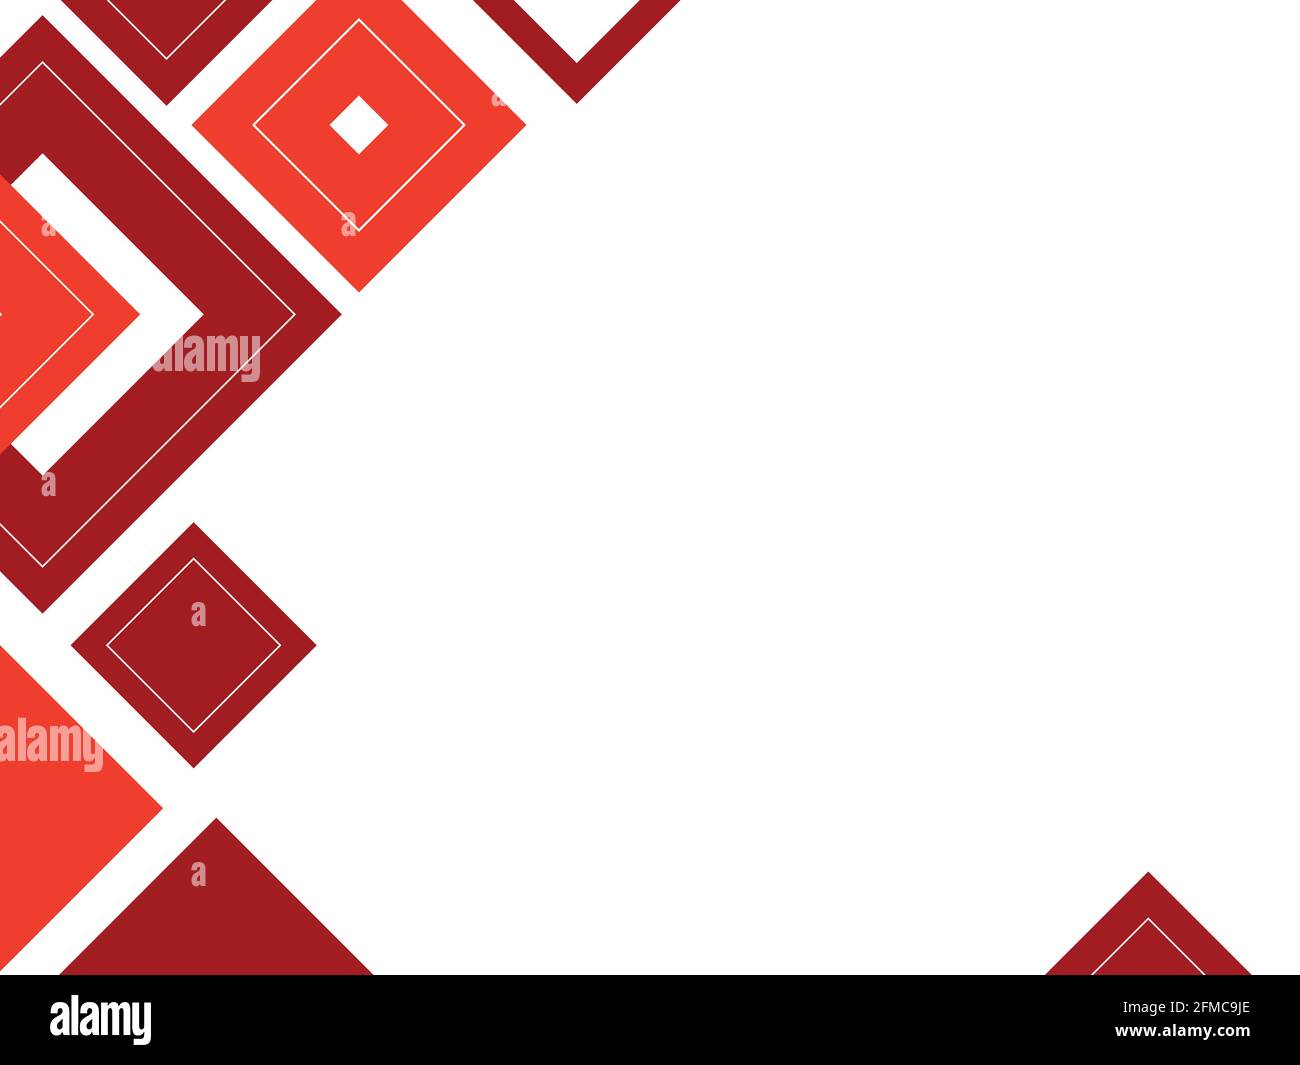 Abstract geometric background red pattern, mosaic template, banner - hình học trừu tượng (abstract geometric shape): Với mẫu Abstract Geometric Background - Red Pattern, bạn sẽ được ngắm nhìn những hình học trừu tượng độc đáo và đầy phong cách, được thiết kế bởi các chuyên gia hàng đầu. Hiệu ứng banner và mosaic được kết hợp phối hợp tạo nên một tác phẩm nghệ thuật độc đáo, đem lại cho bạn cảm giác thật sự mới lạ và thú vị.